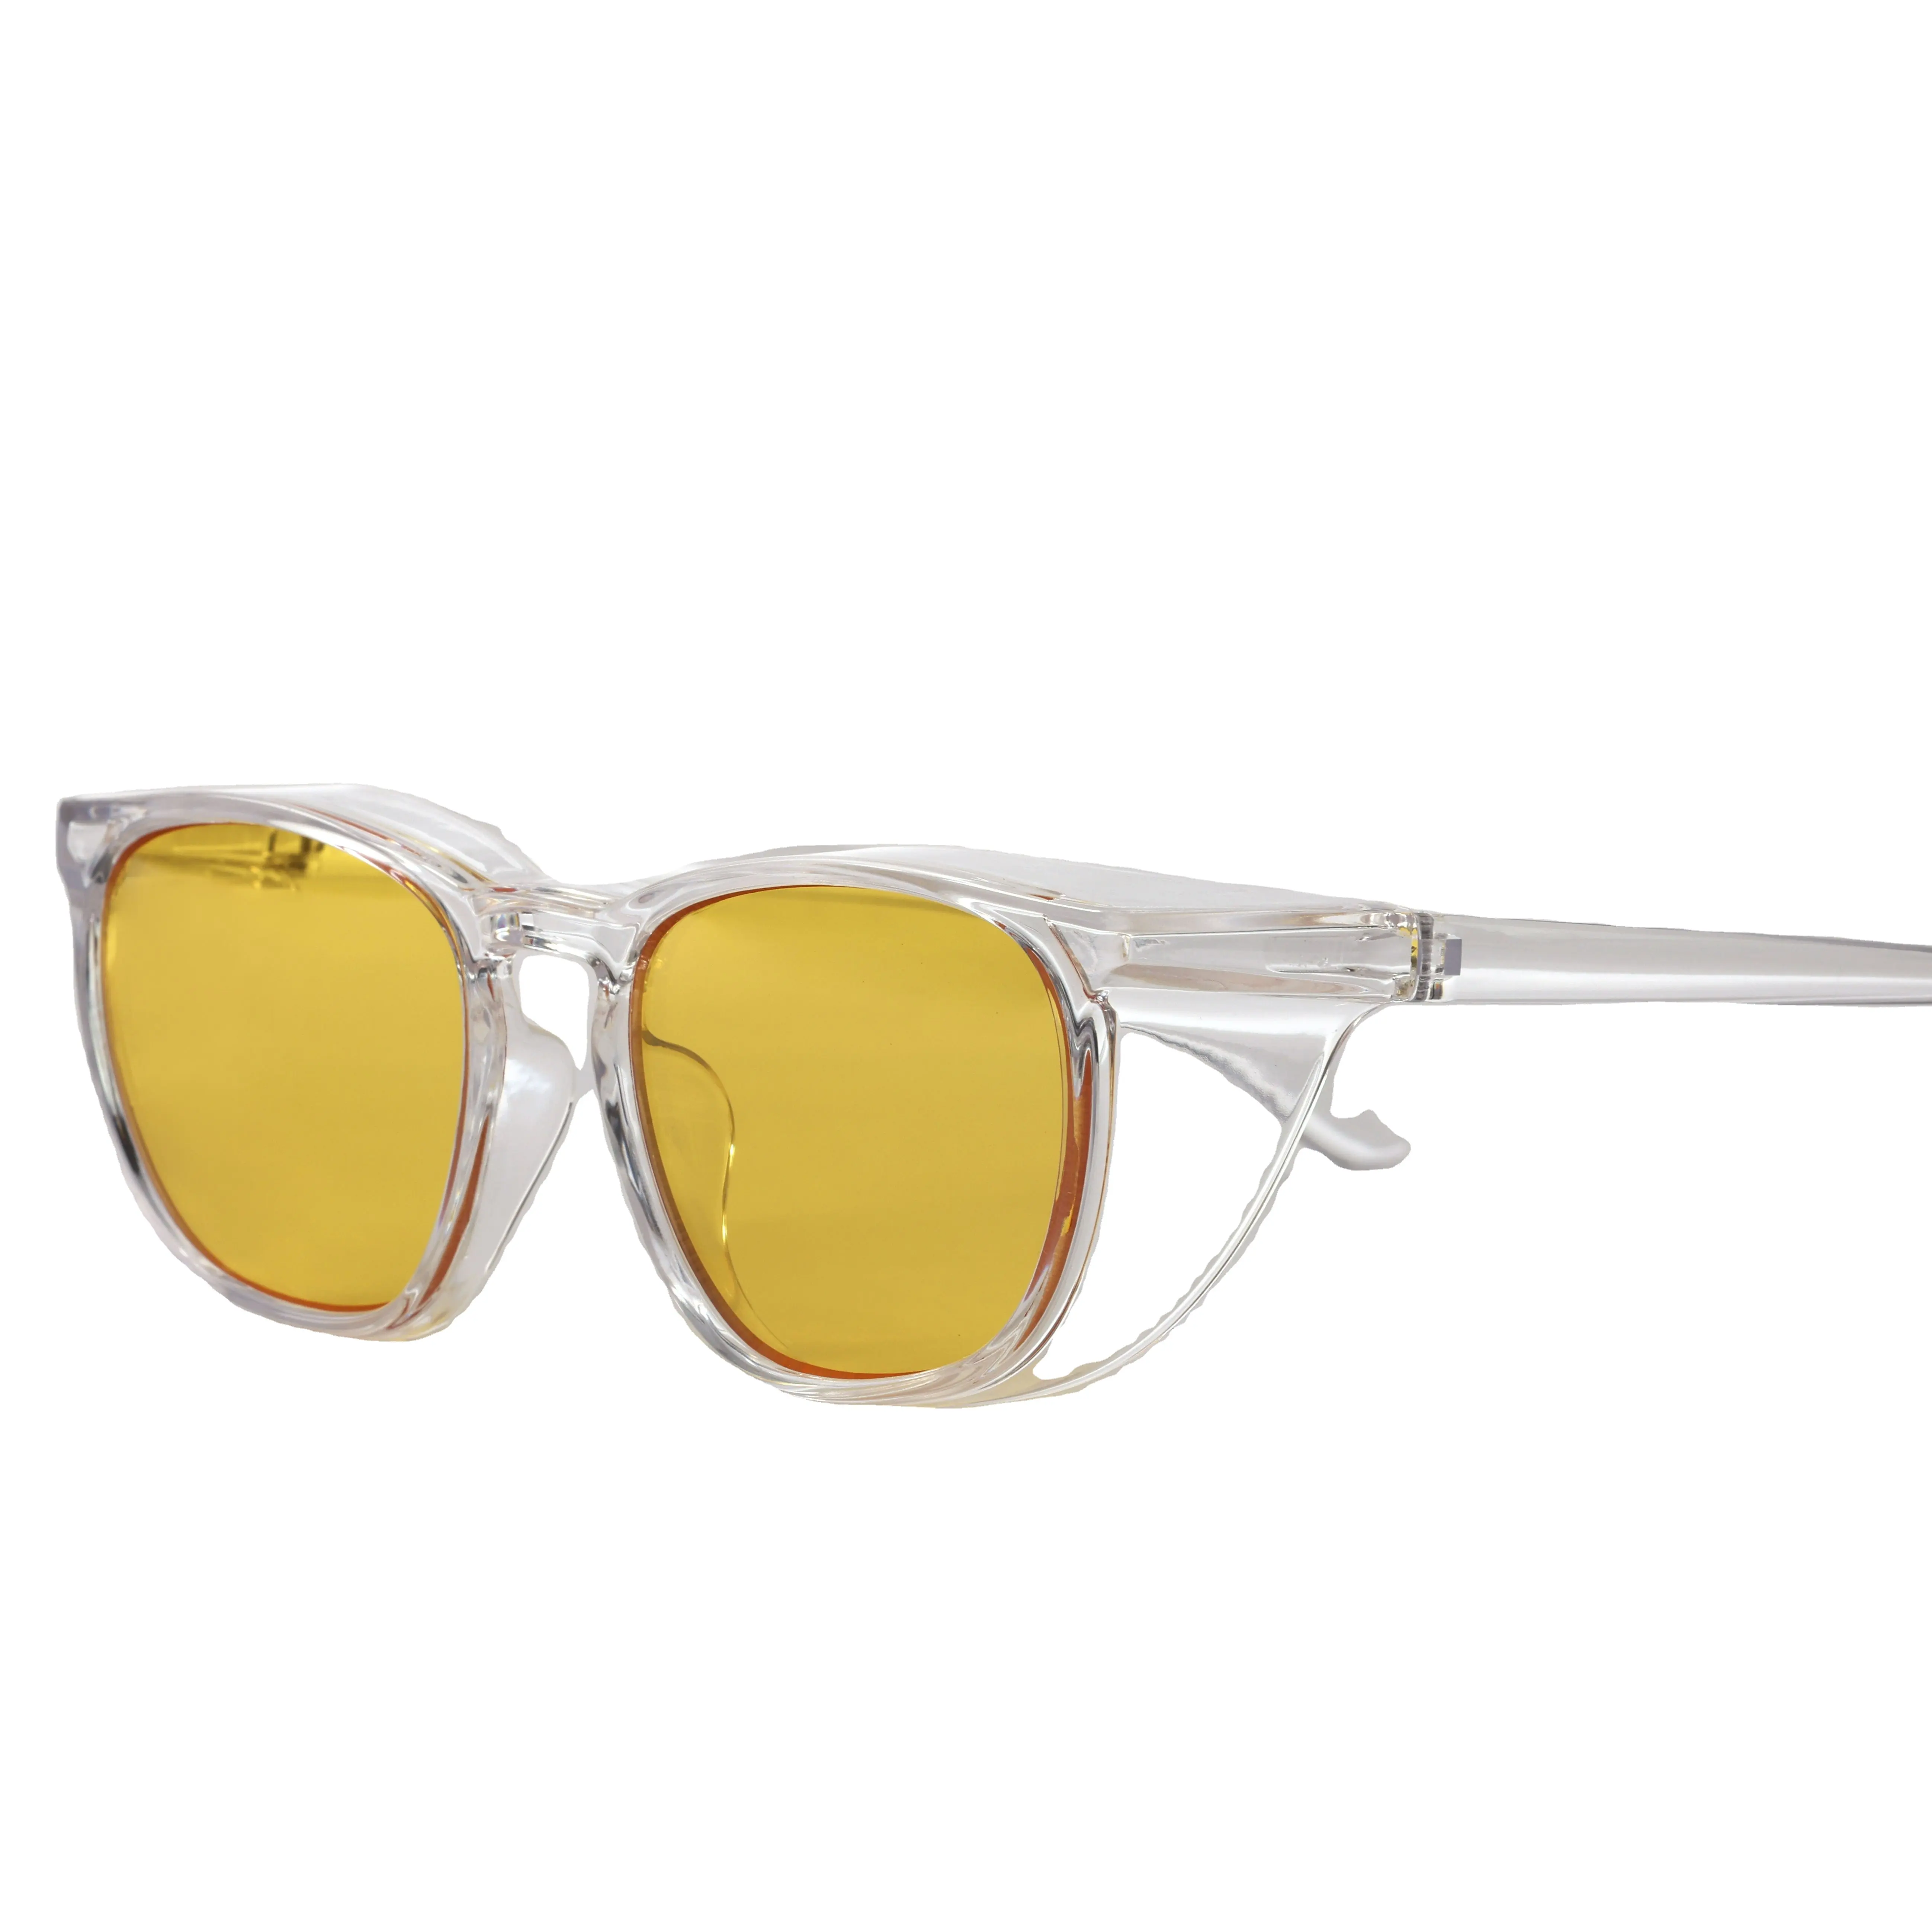 Erkekler kadınlar kişisel koruyucu Uv400 anti-sis güneş gözlüğü göz koruması için sarı güvenlik gözlükleri antifog gözlük